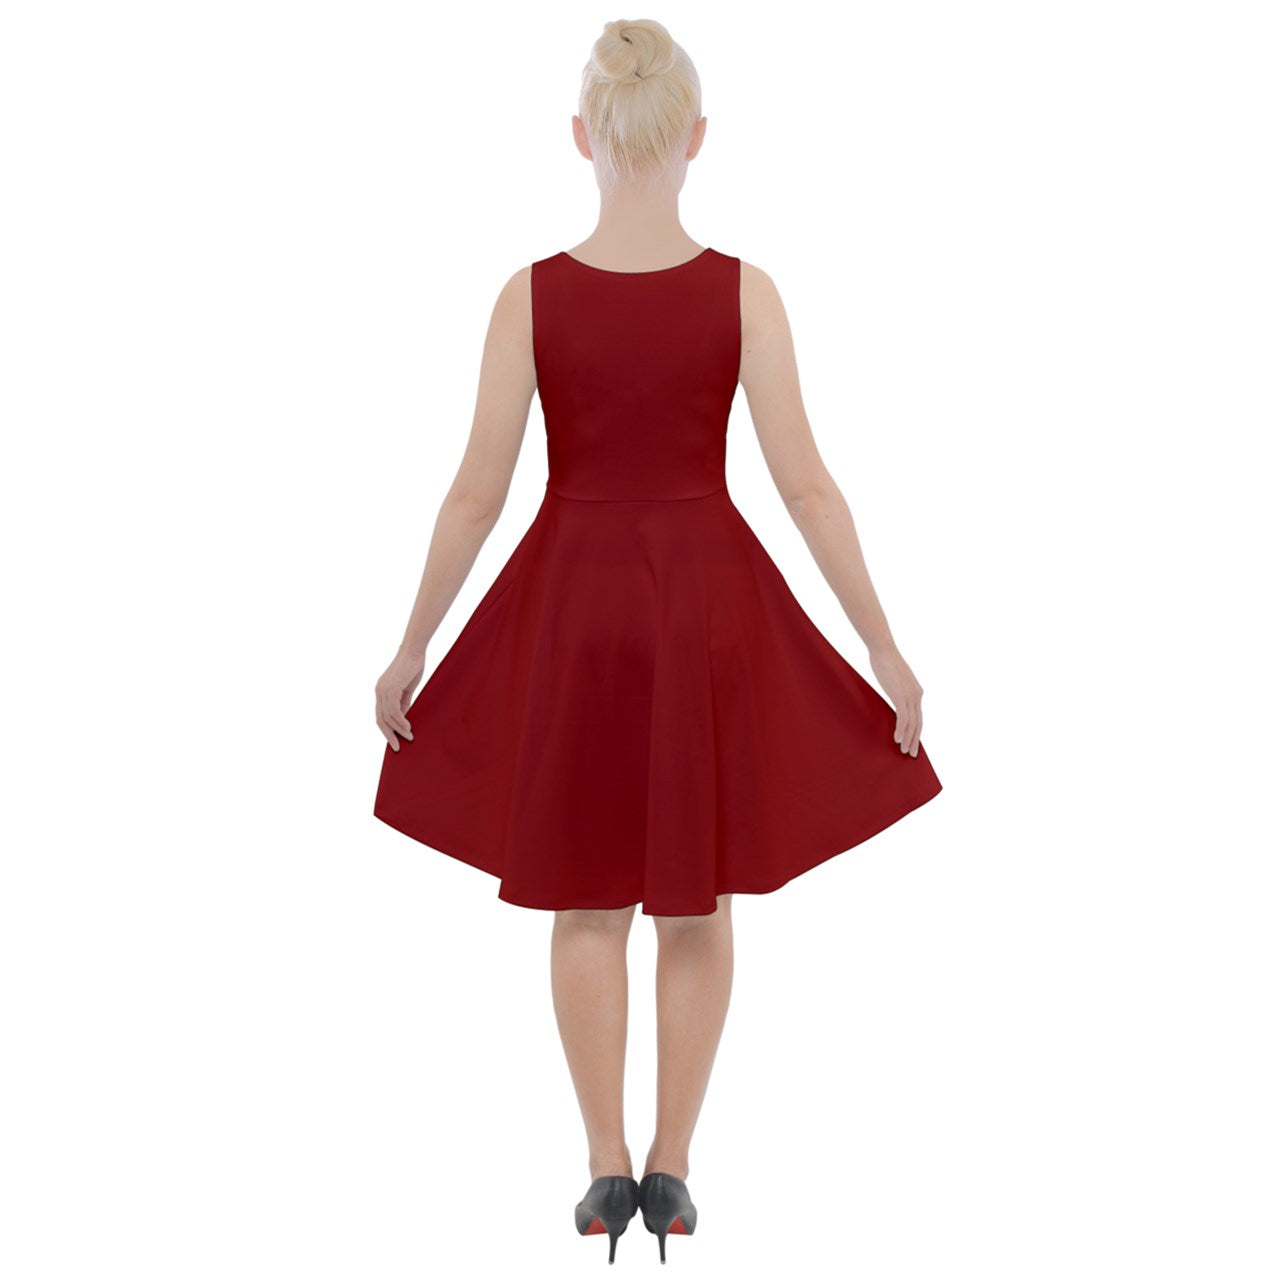 yuletide red Knee Length Skater Dress With Pockets